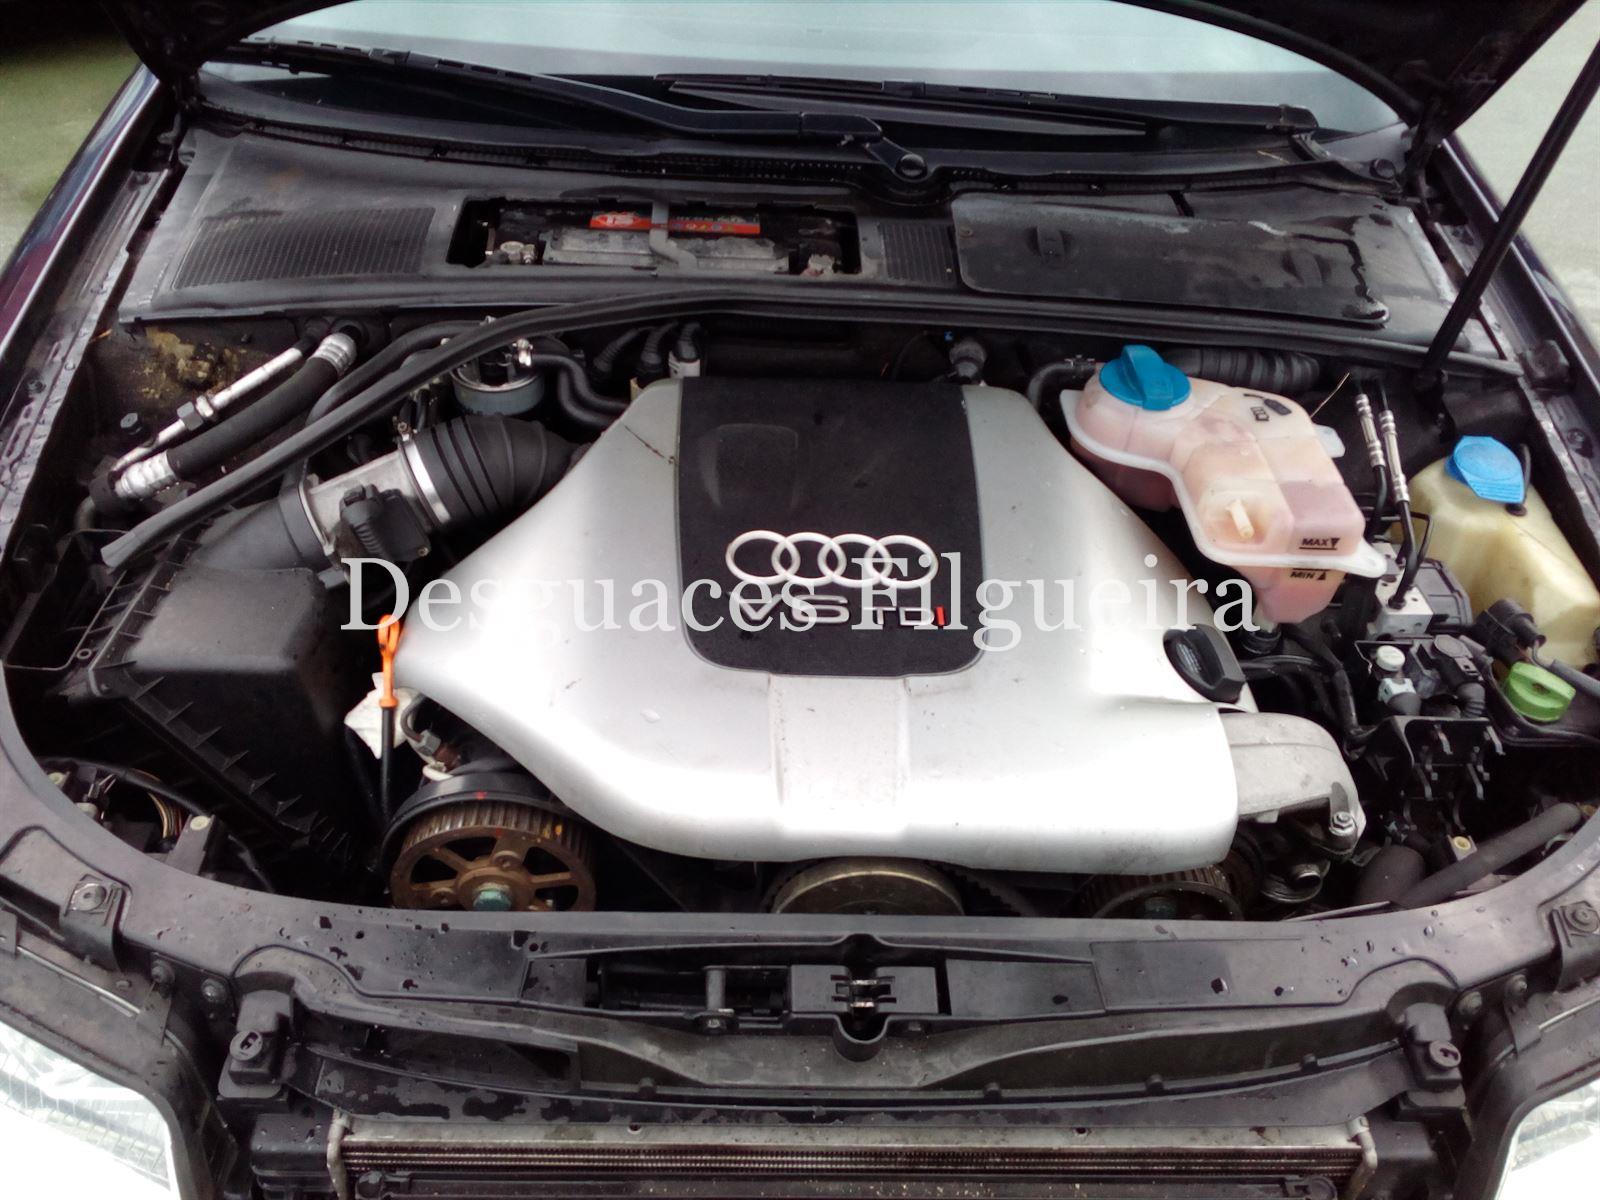 Despiece Audi A4 B6 avant 2.5 TDI Quattro automatico - Imagen 7